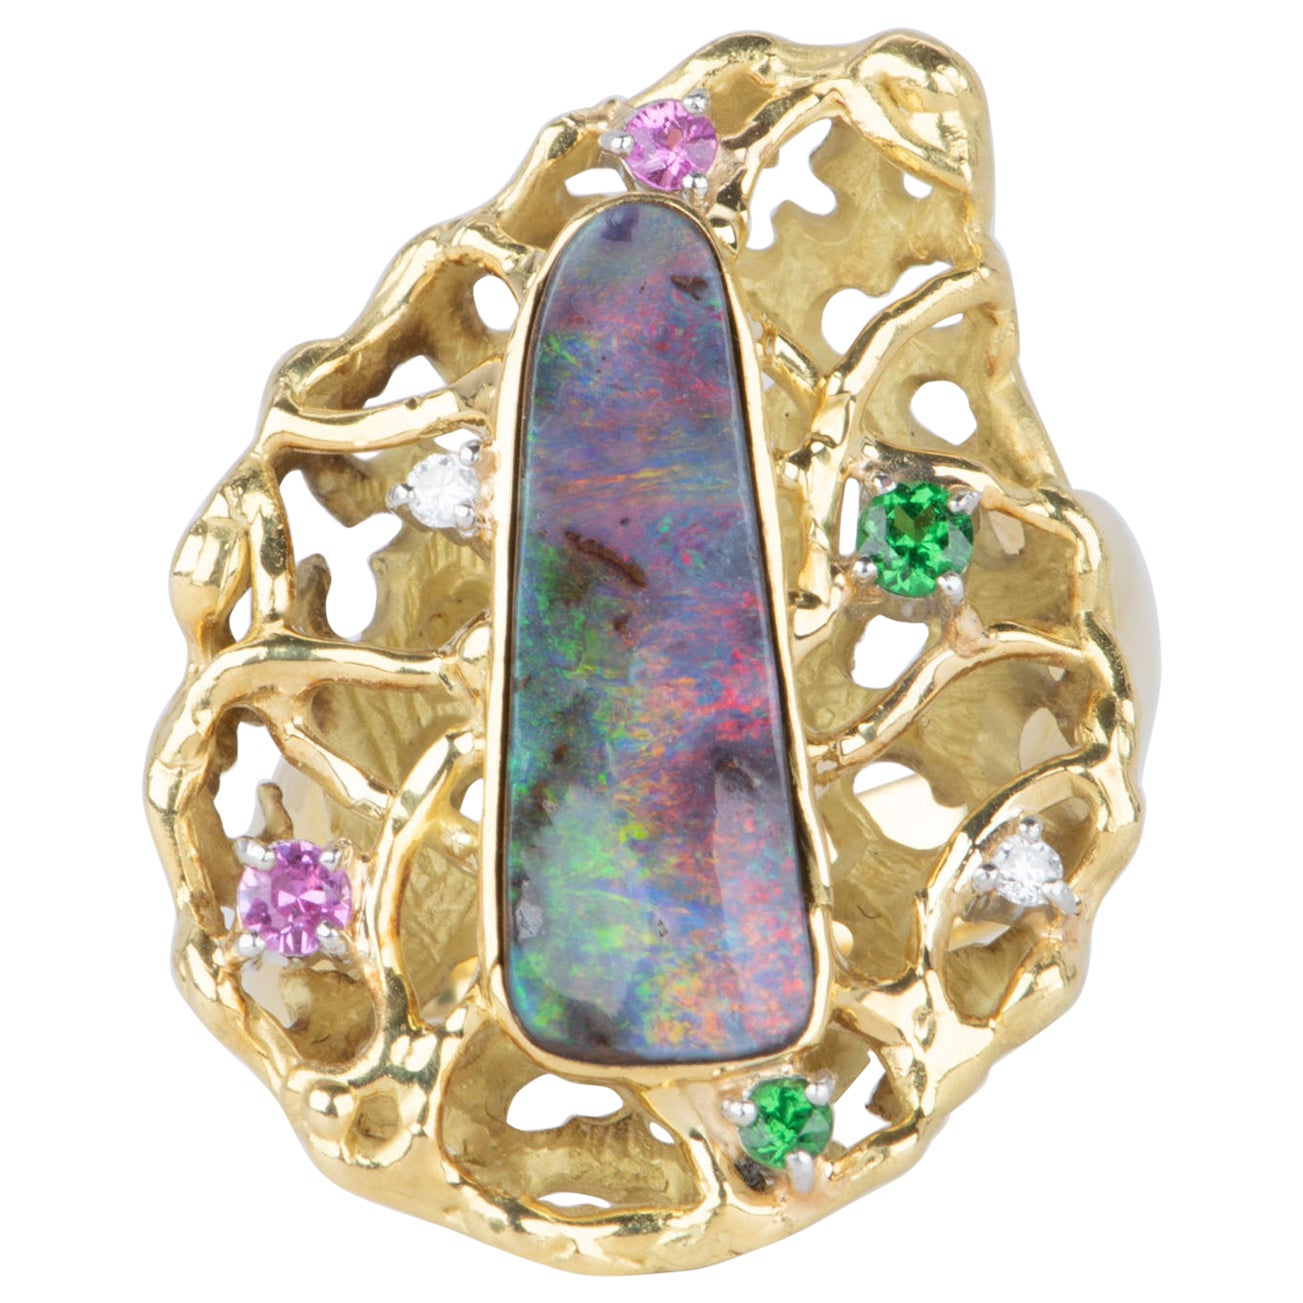 Australian Boulder Opal Modernist Design Statement Ring 18K Gold 14.2g V1112 For Sale